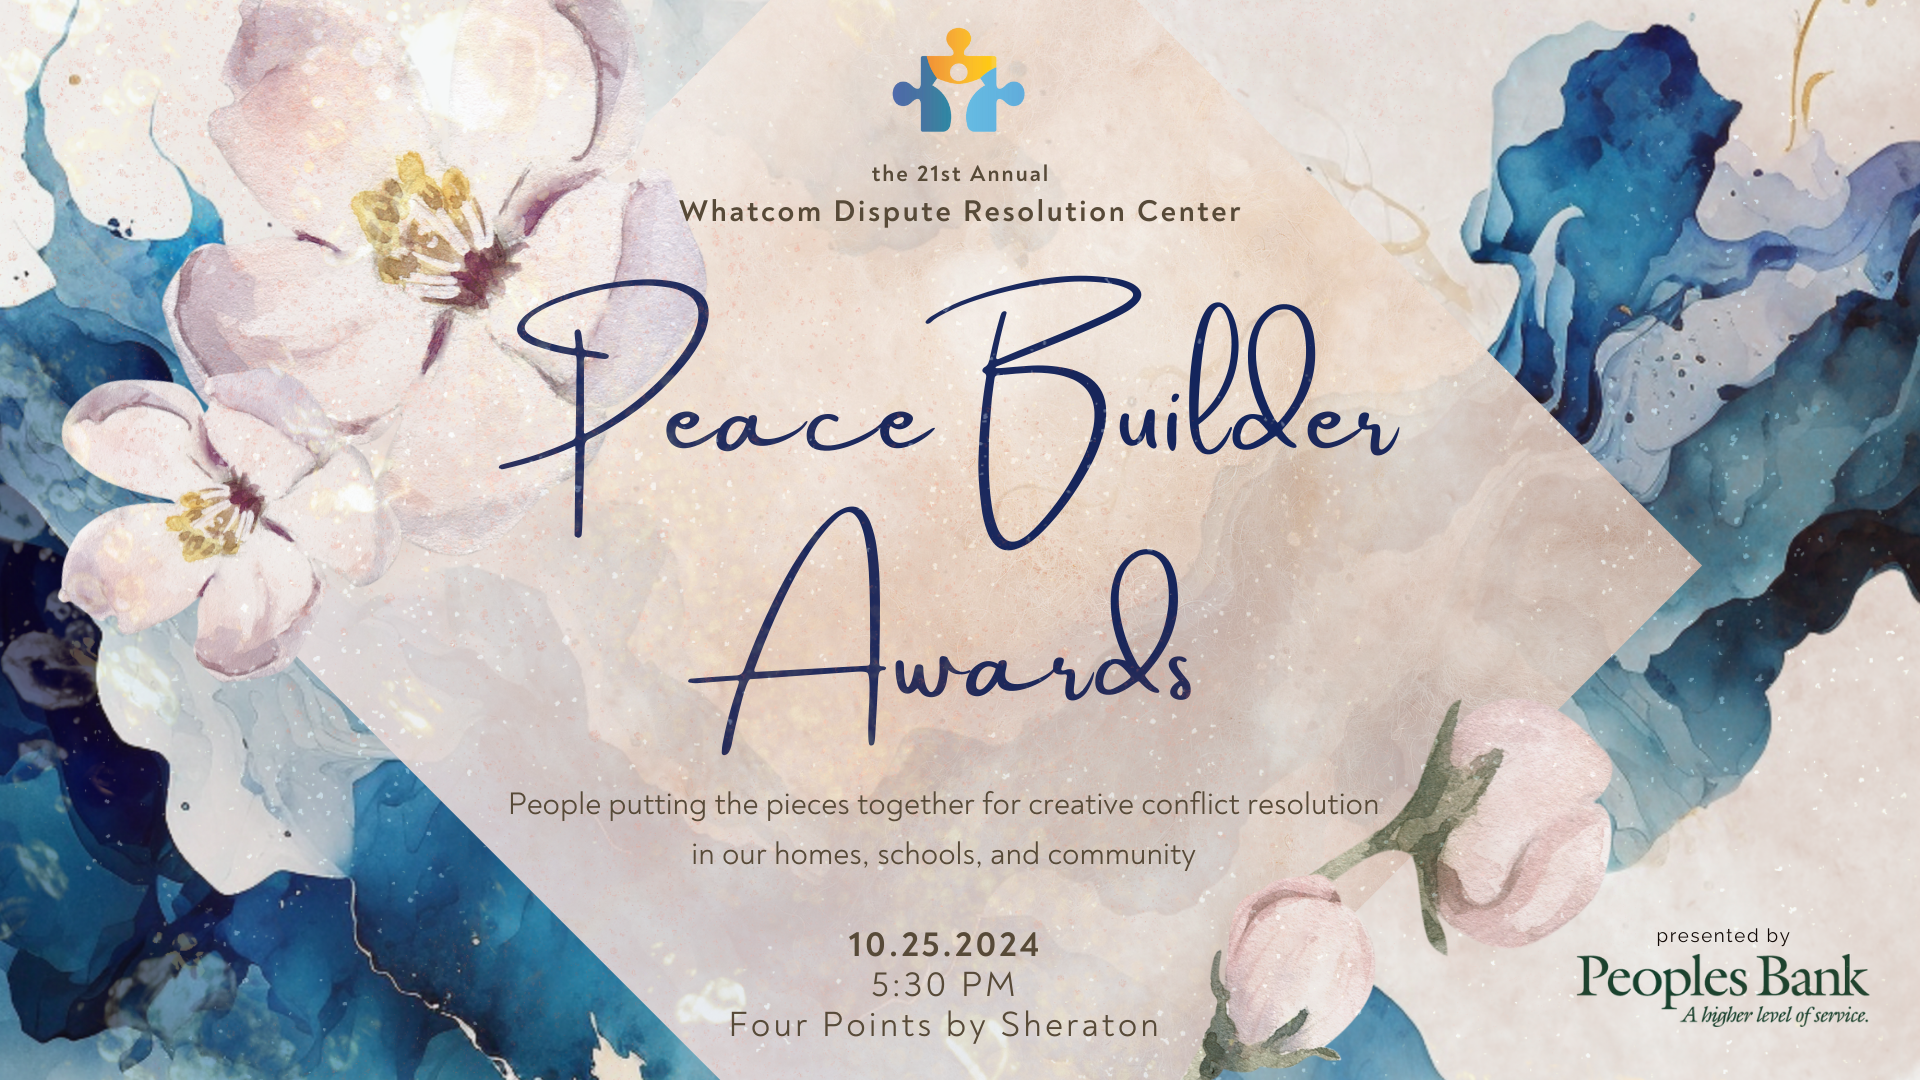 Cartel de los Peace Builder Awards con fondo de acuarela con flores de manzano y el texto: "21º Premio Anual al Constructor de la Paz del Centro de Resolución de Disputas Whatcom - 25.10.2024, 17:30, Four Points by Sheraton